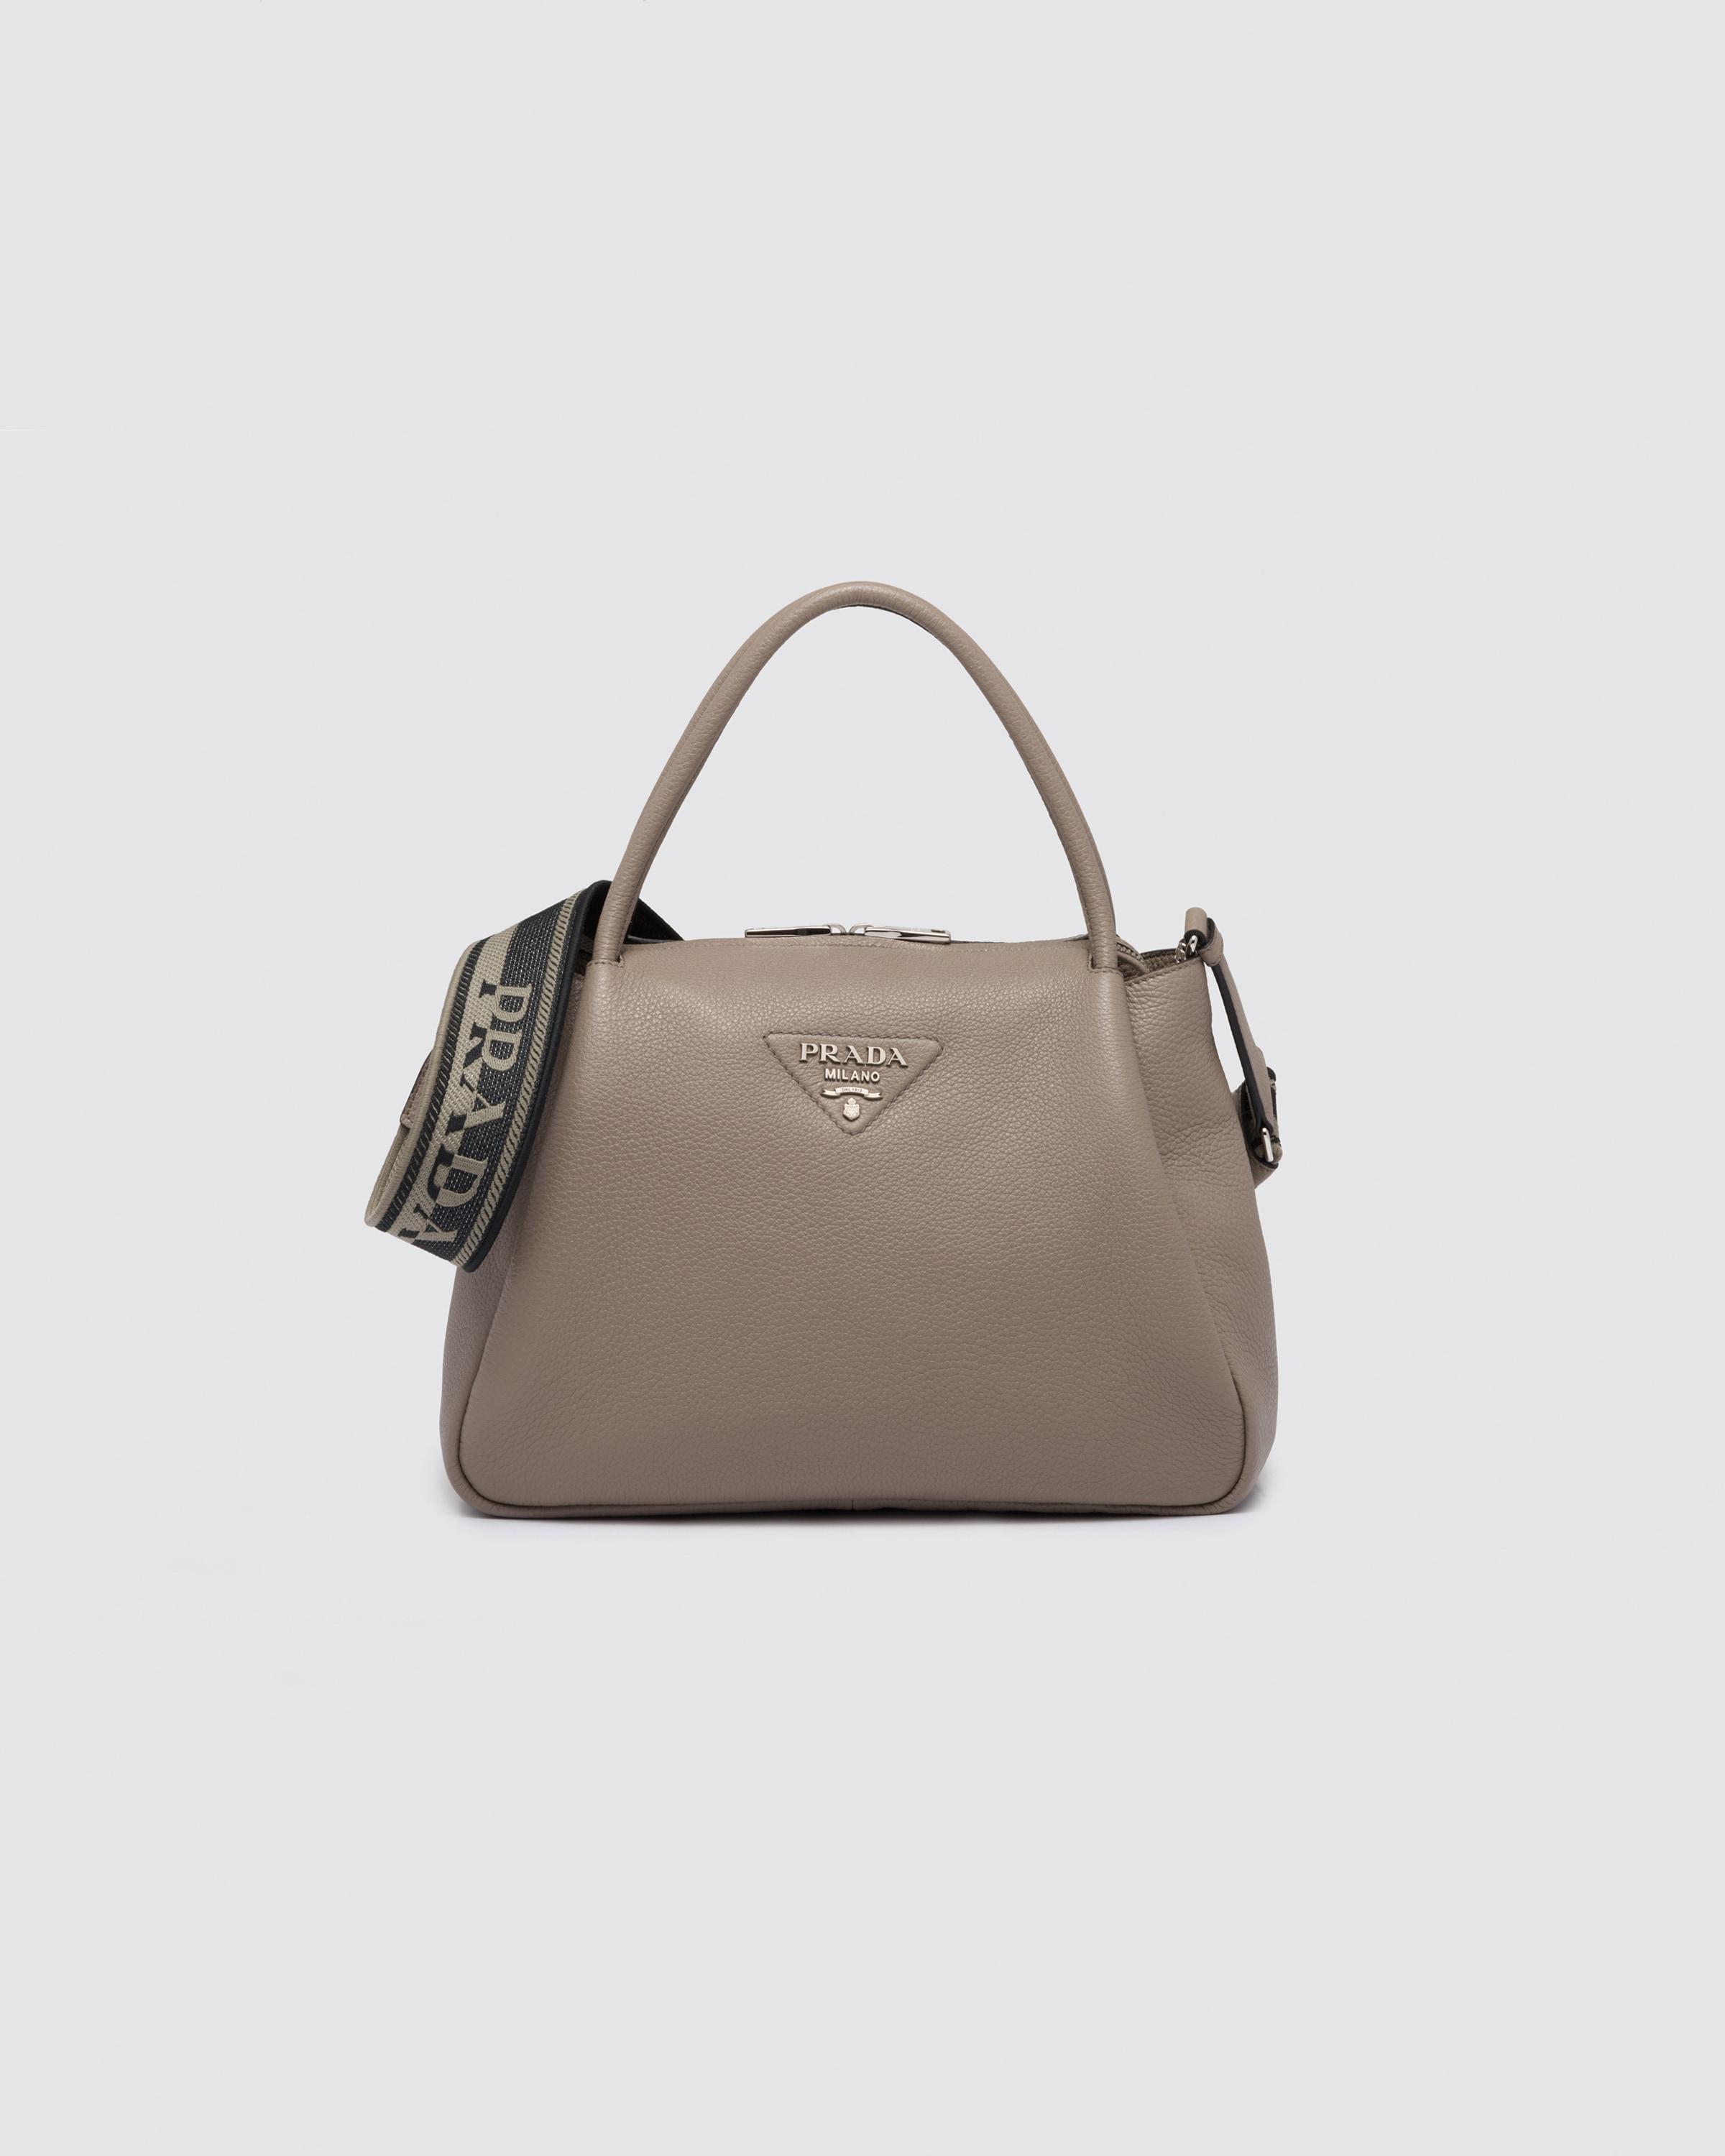 Prada - Small Flou Shoulder Bag - Women - Leather - Os - Black